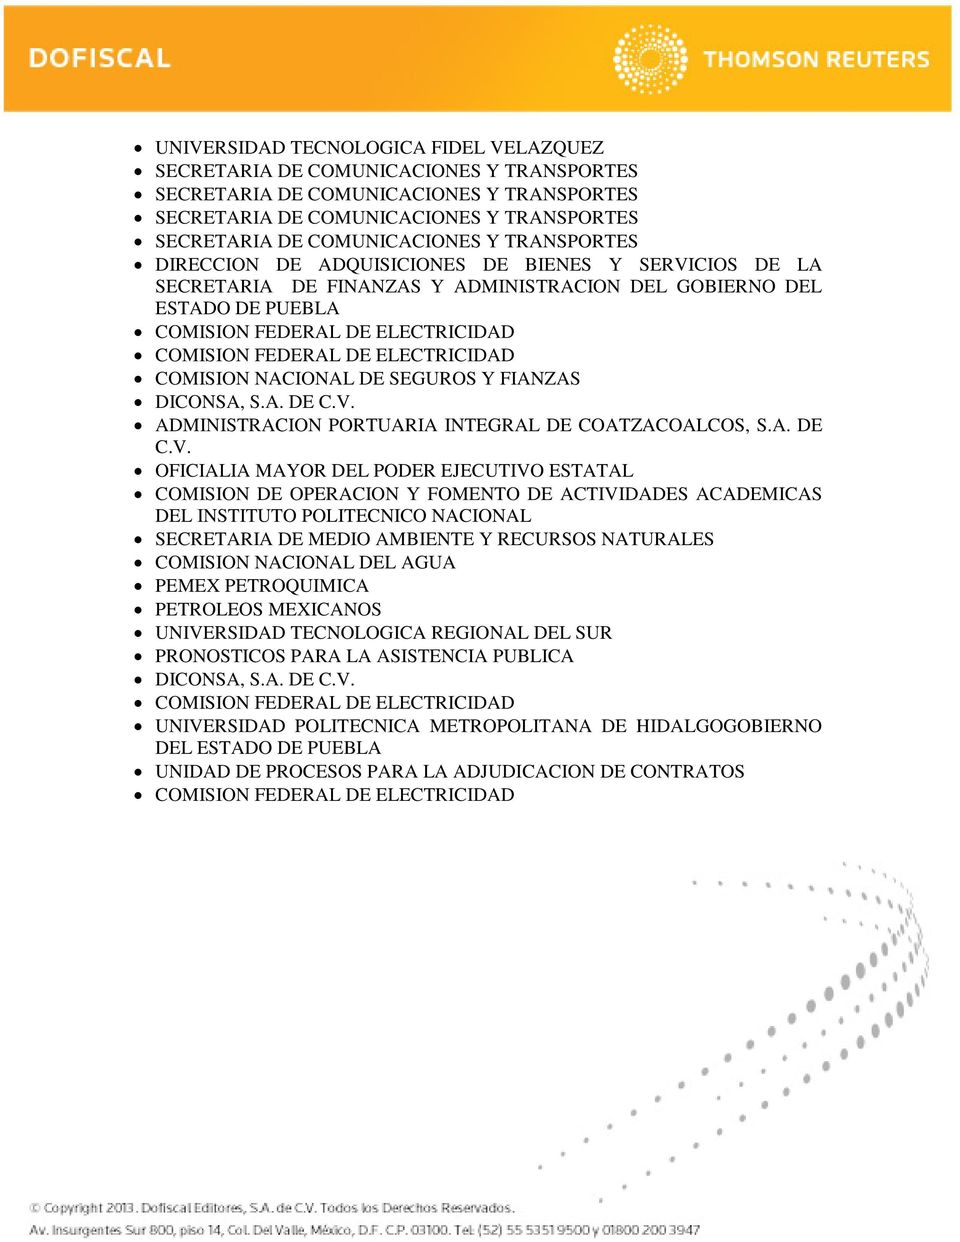 ADMINISTRACION PORTUARIA INTEGRAL DE COATZACOALCOS, S.A. DE C.V.